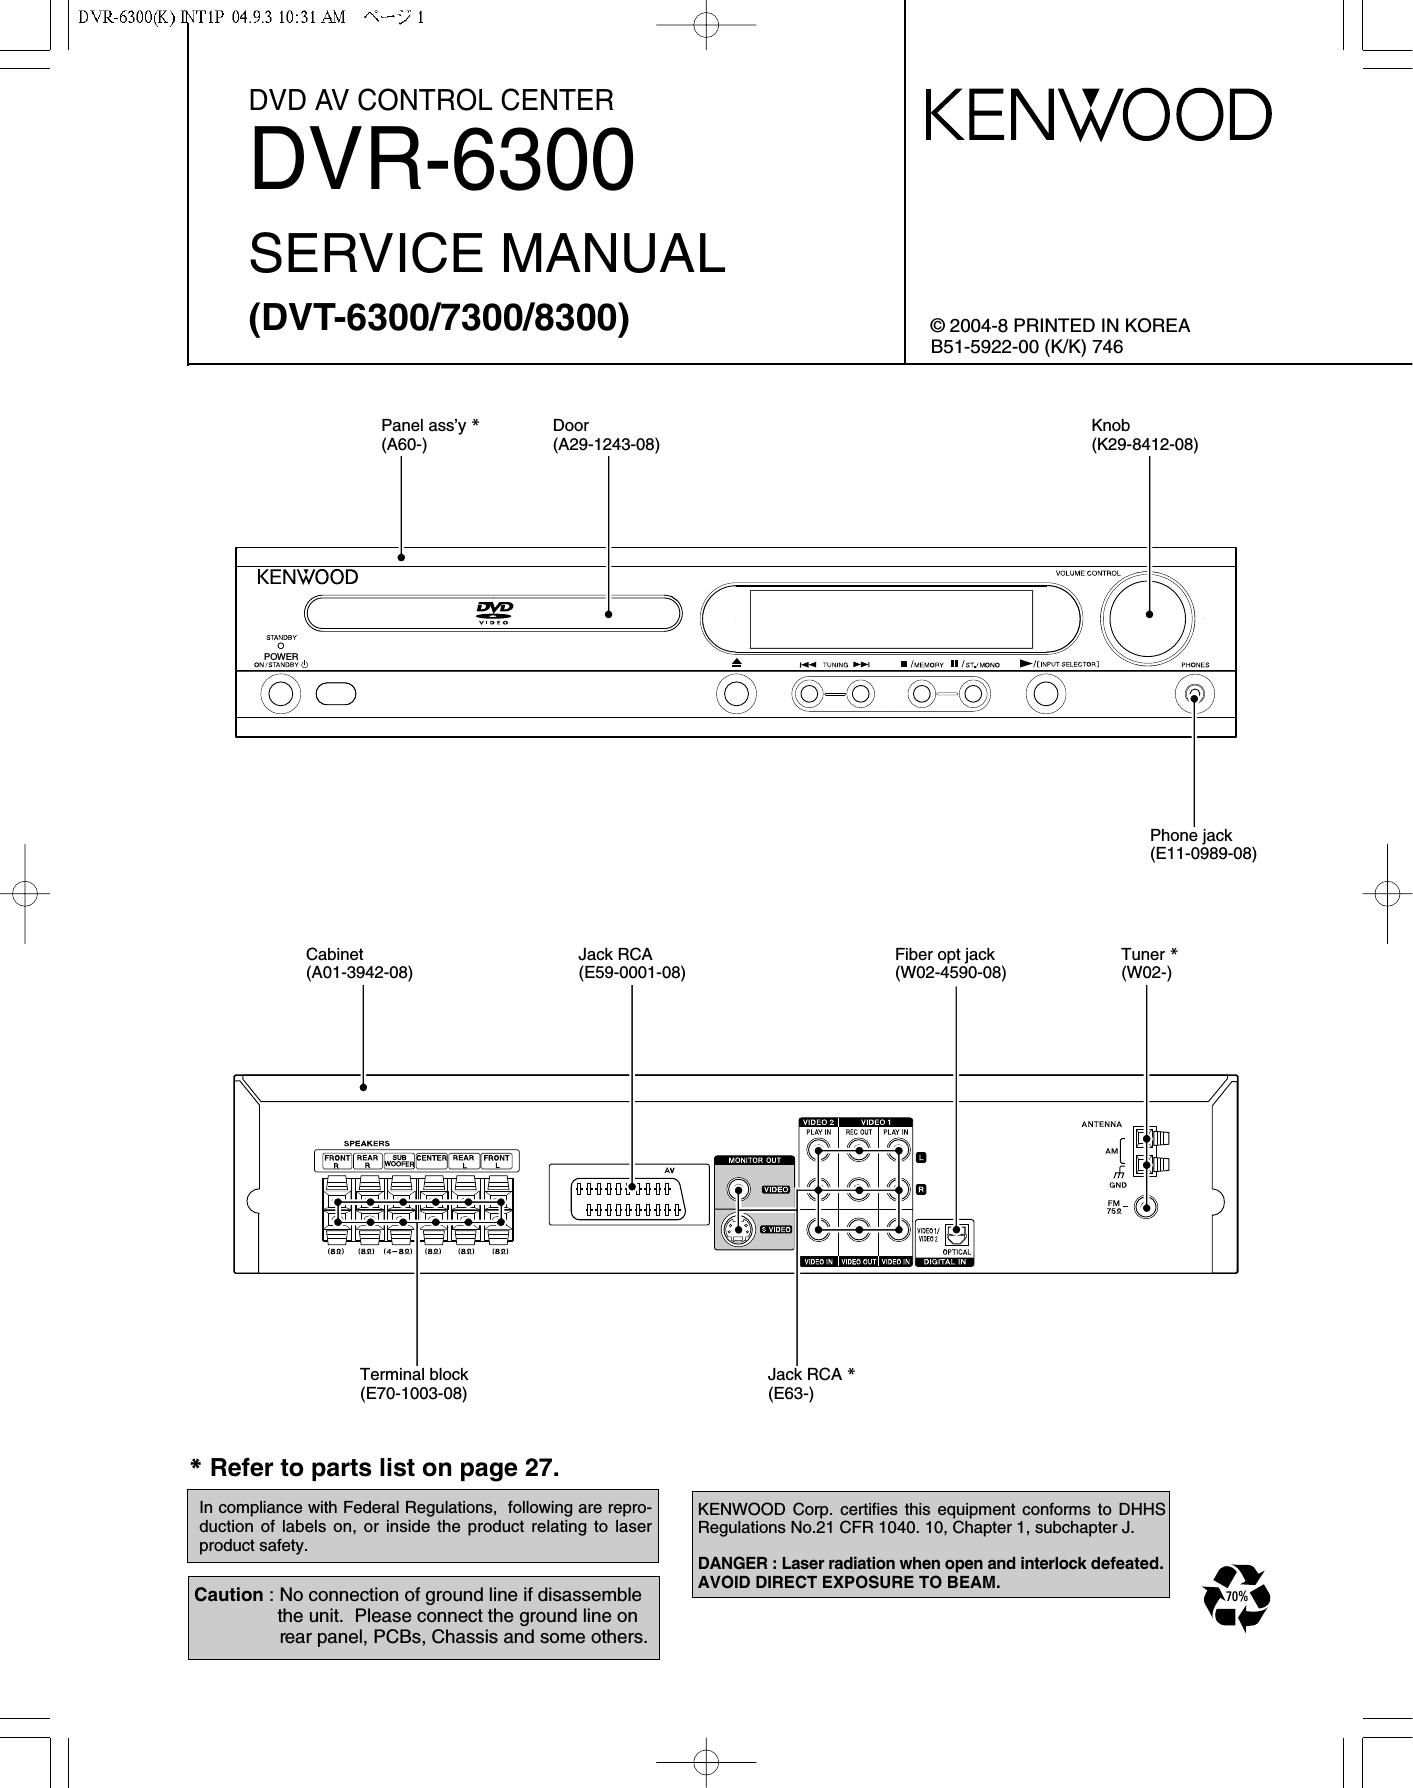 Kenwood DVR 6300 Service Manual